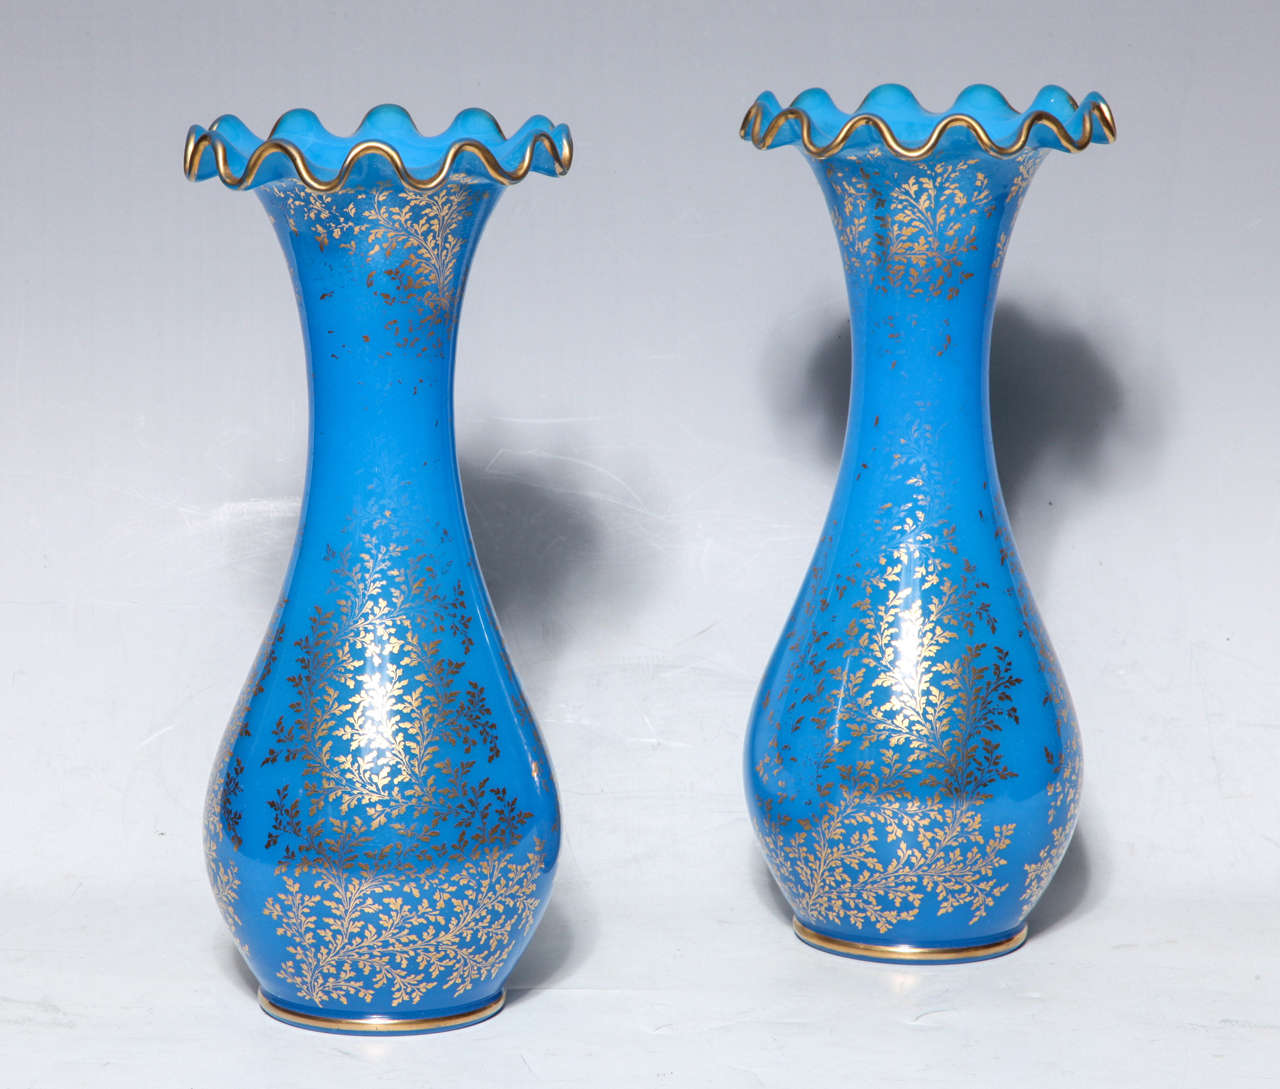 Paire de vases en cristal opalin bleu de Baccarat avec décorations florales en or peint à la main 24 carats et bords ondulés. Pour une paire similaire, veuillez consulter les photos dans le livre sur le Baccarat. Paire de vases en cristal opalin